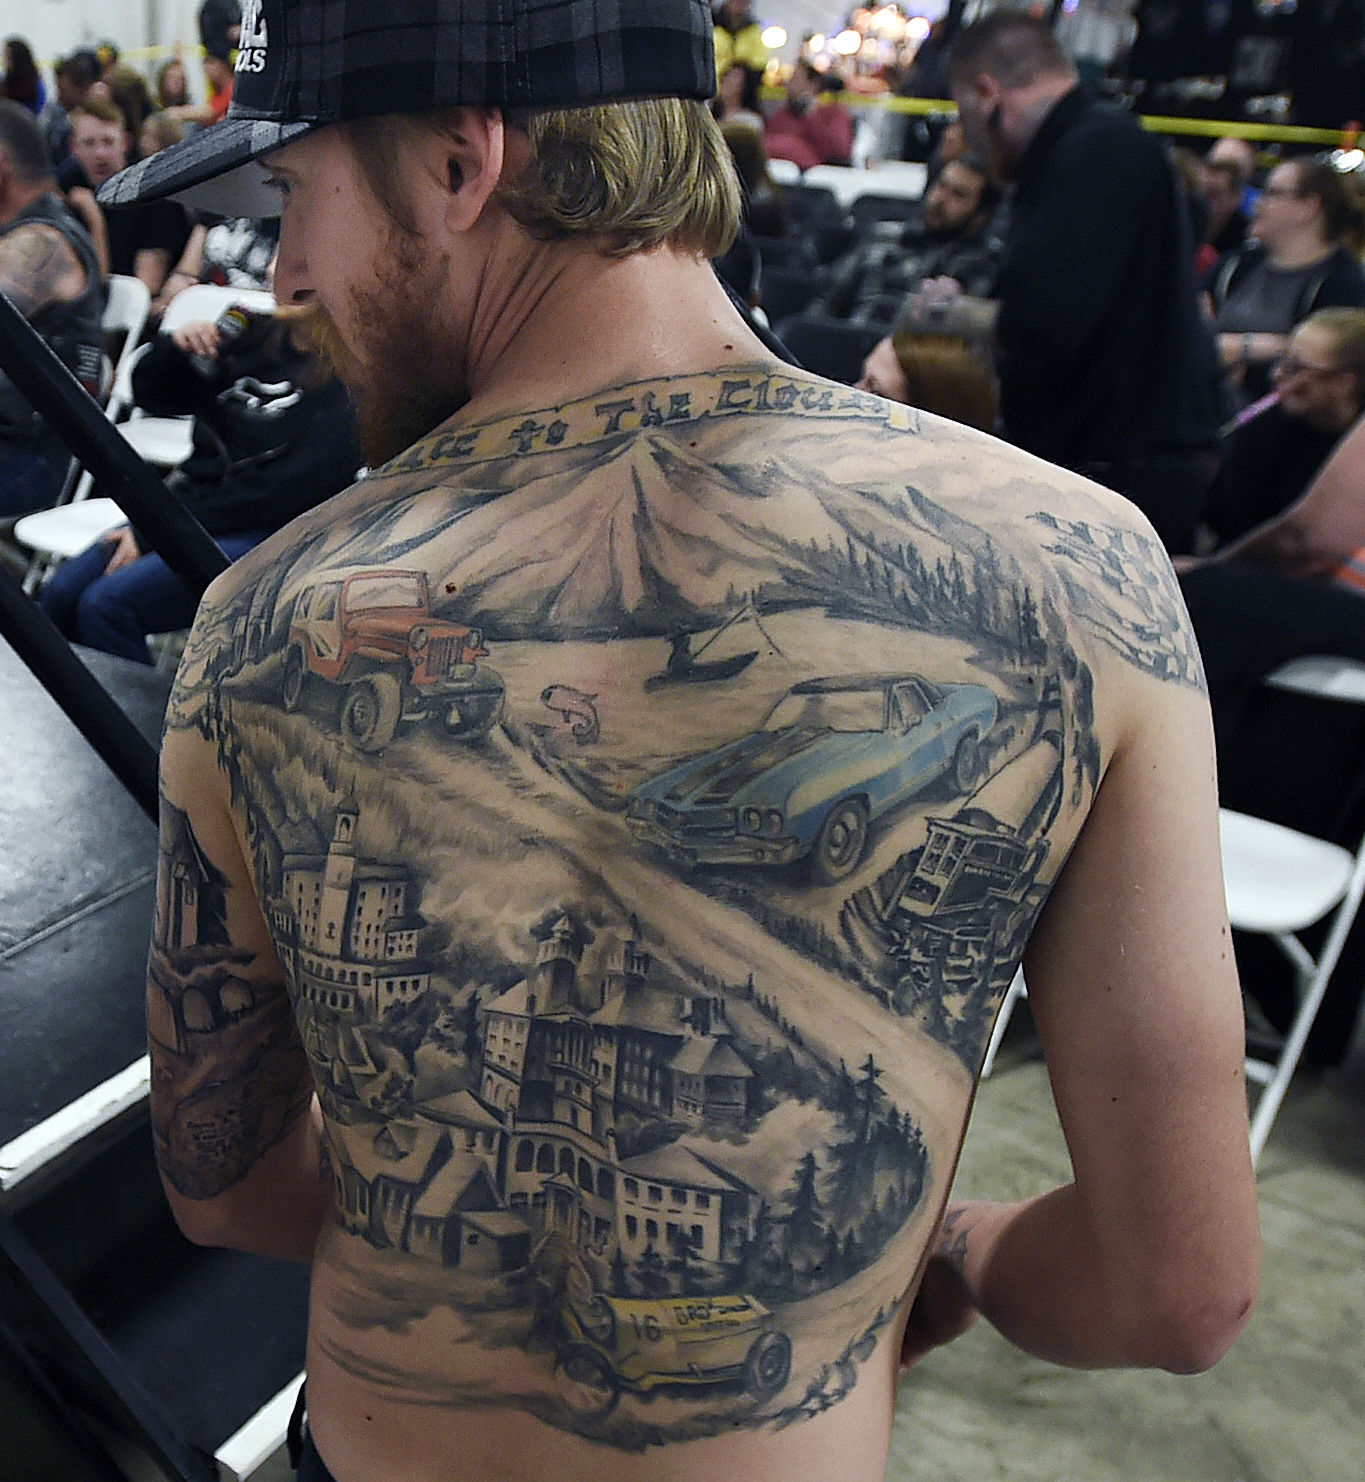 Should This Denver Broncos Player Have a Kansas City Chiefs Tattoo